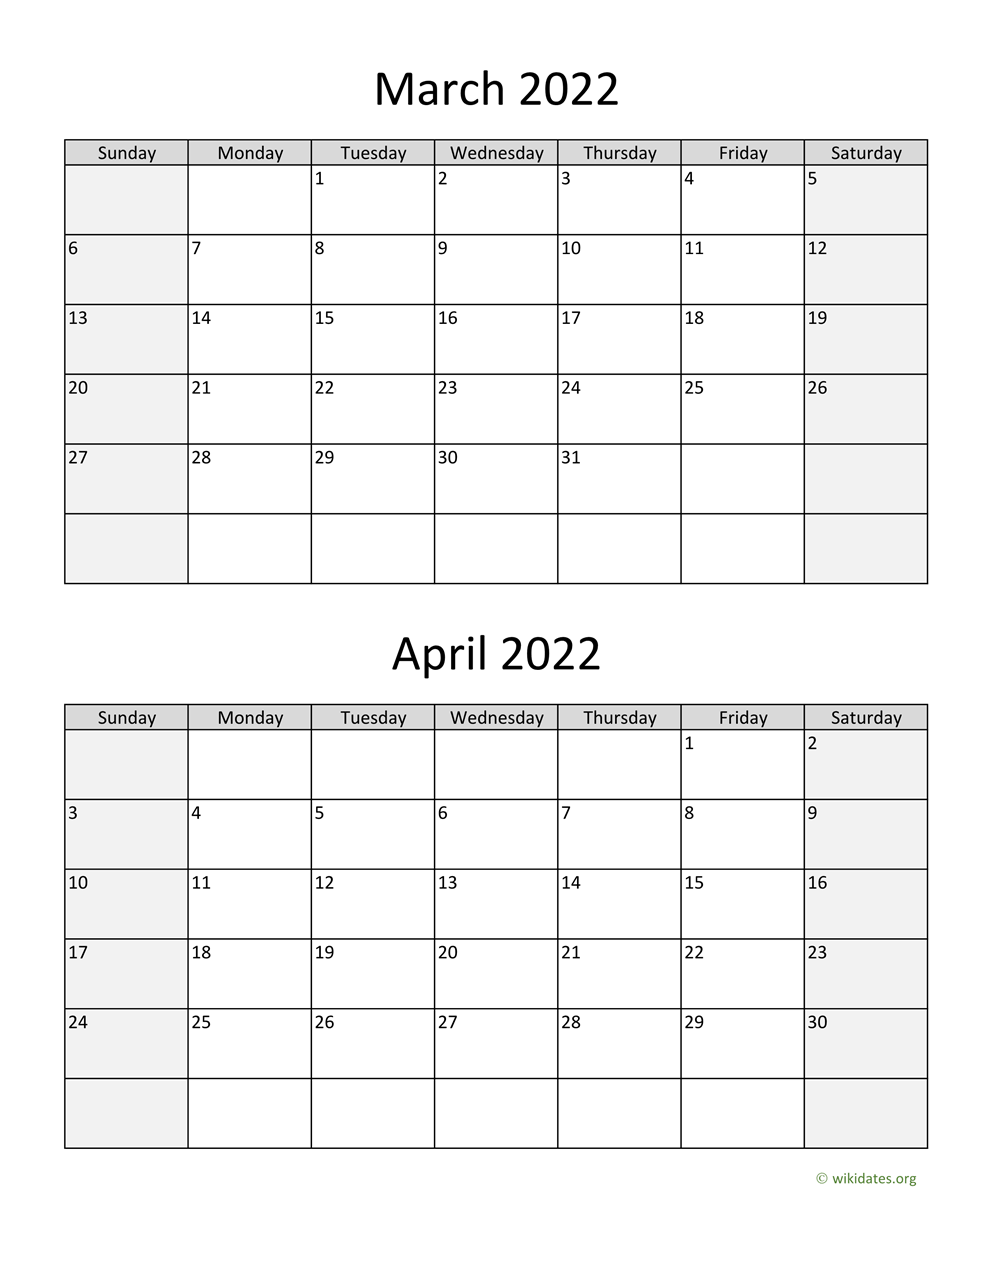 March And April Calendar 2022 March And April 2022 Calendar | Wikidates.org